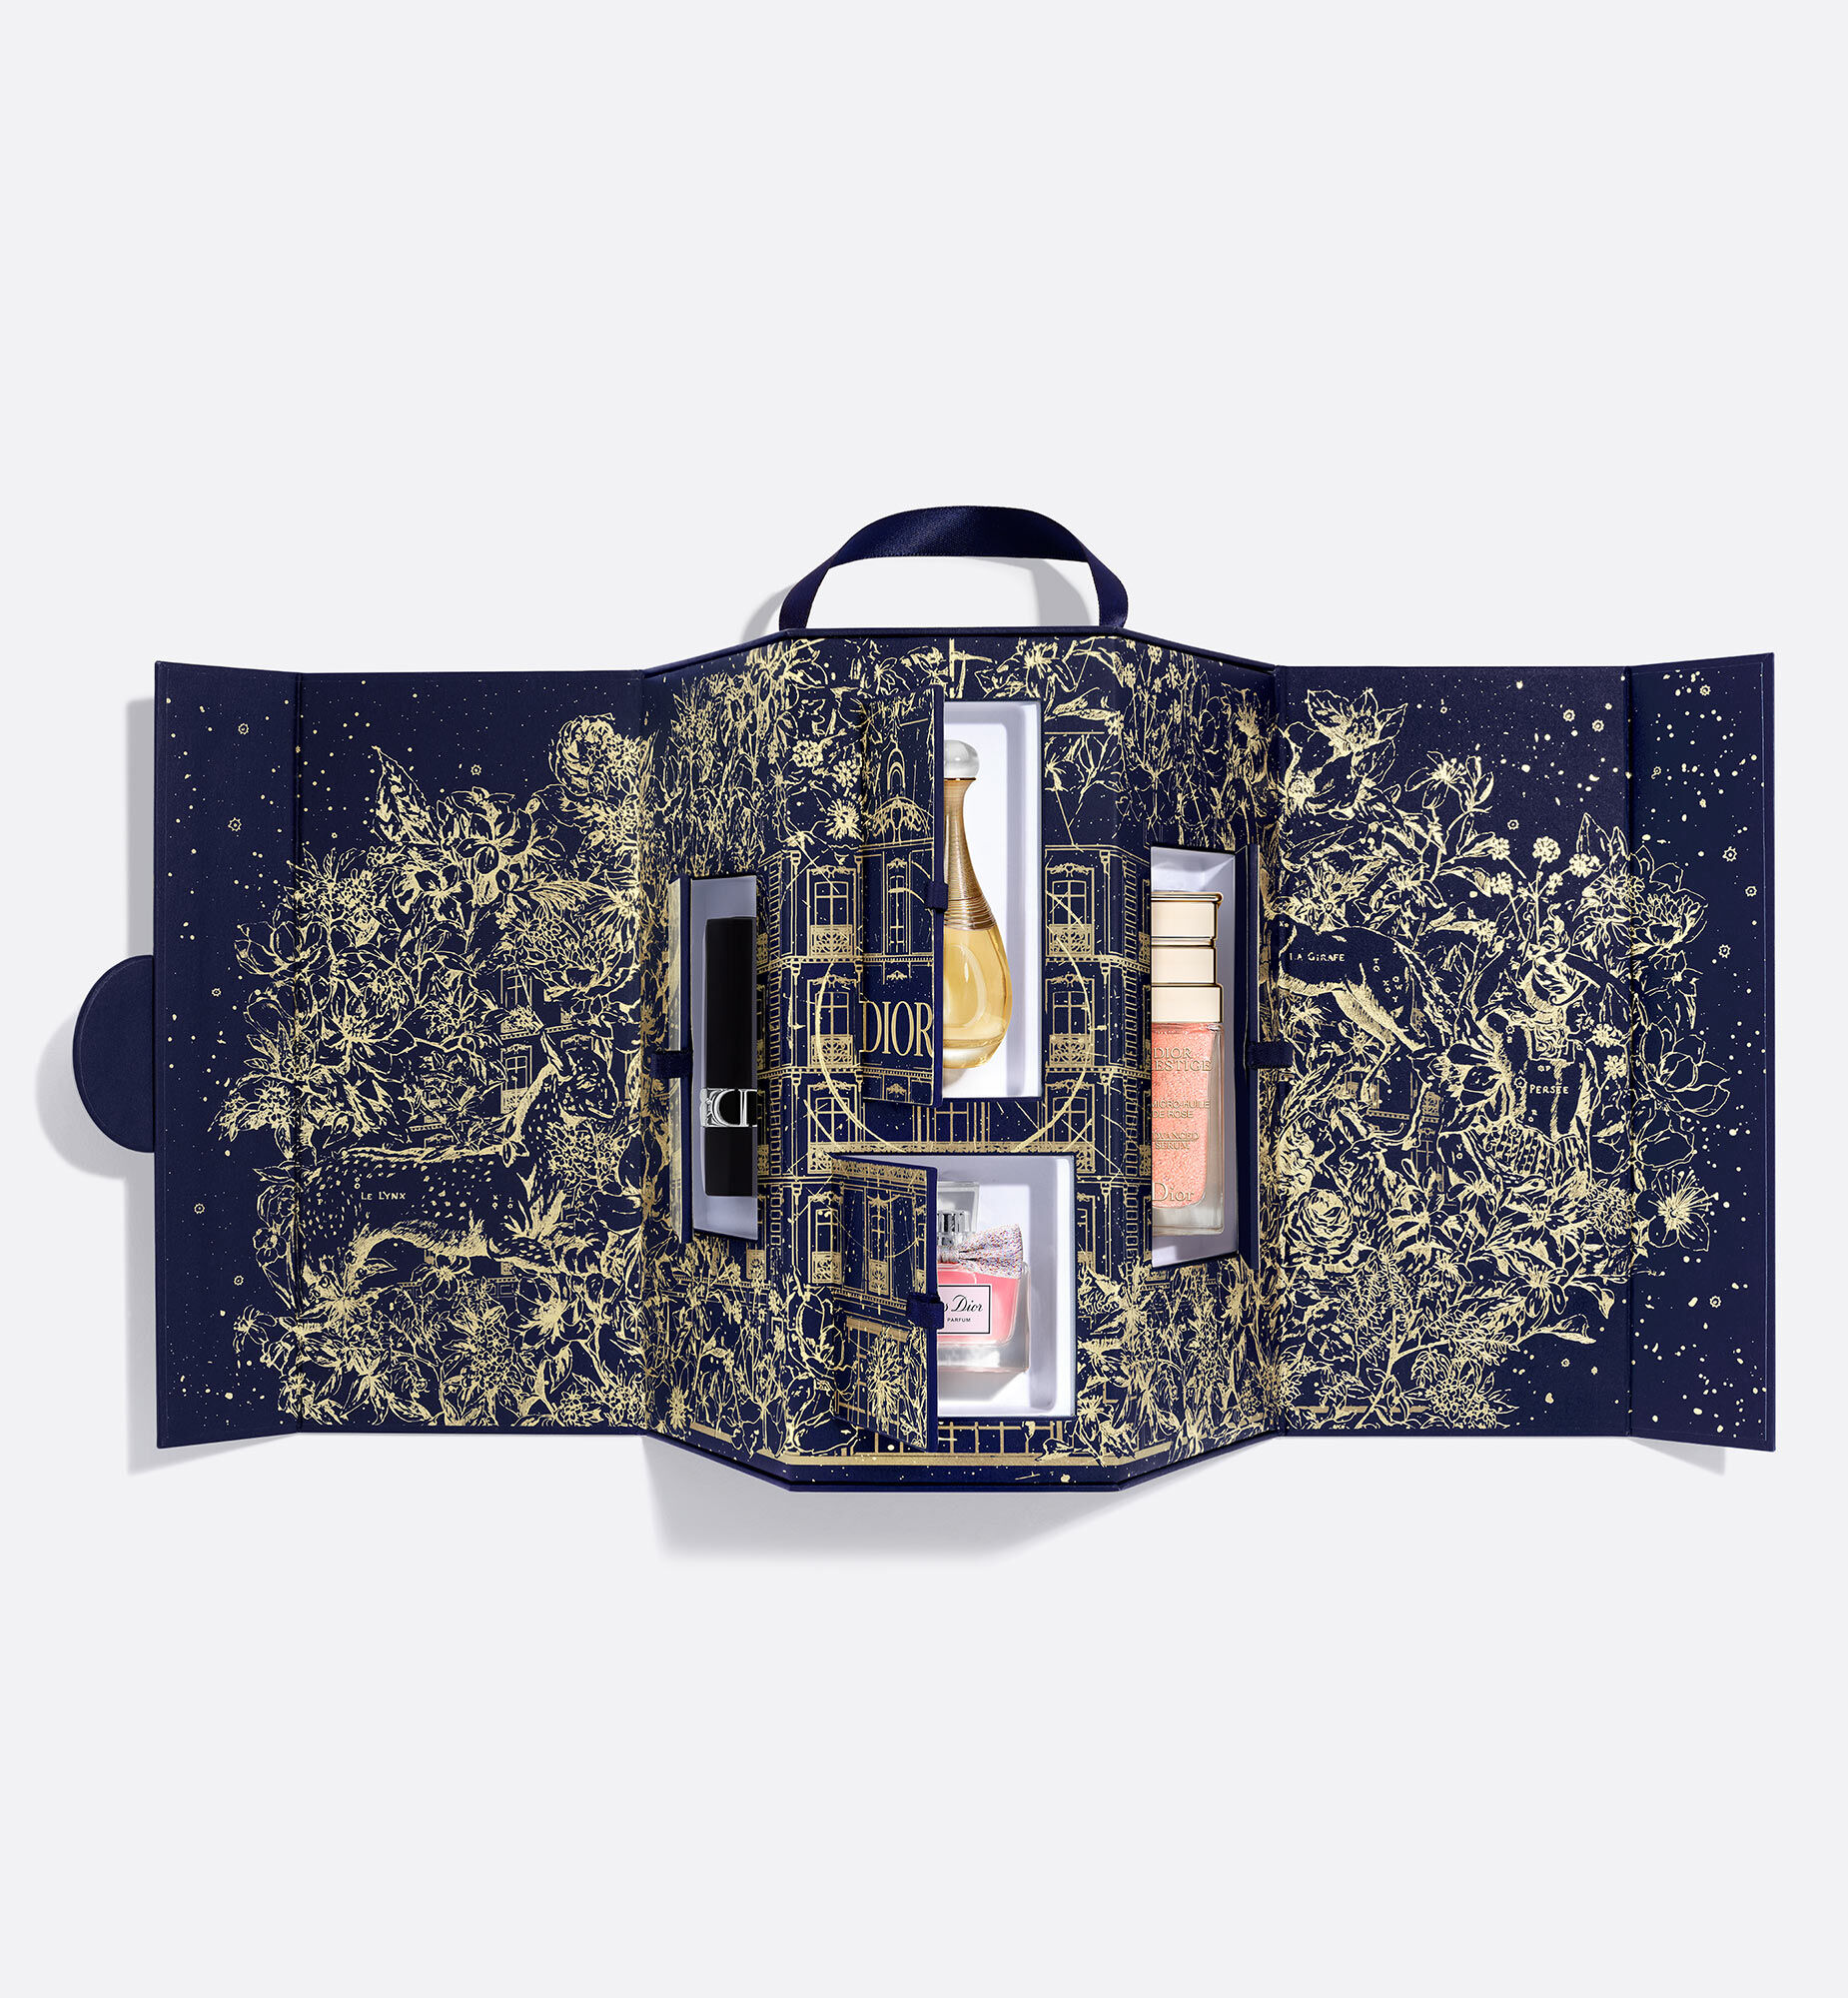 Dior Prestige - The collections - Skincare | DIOR